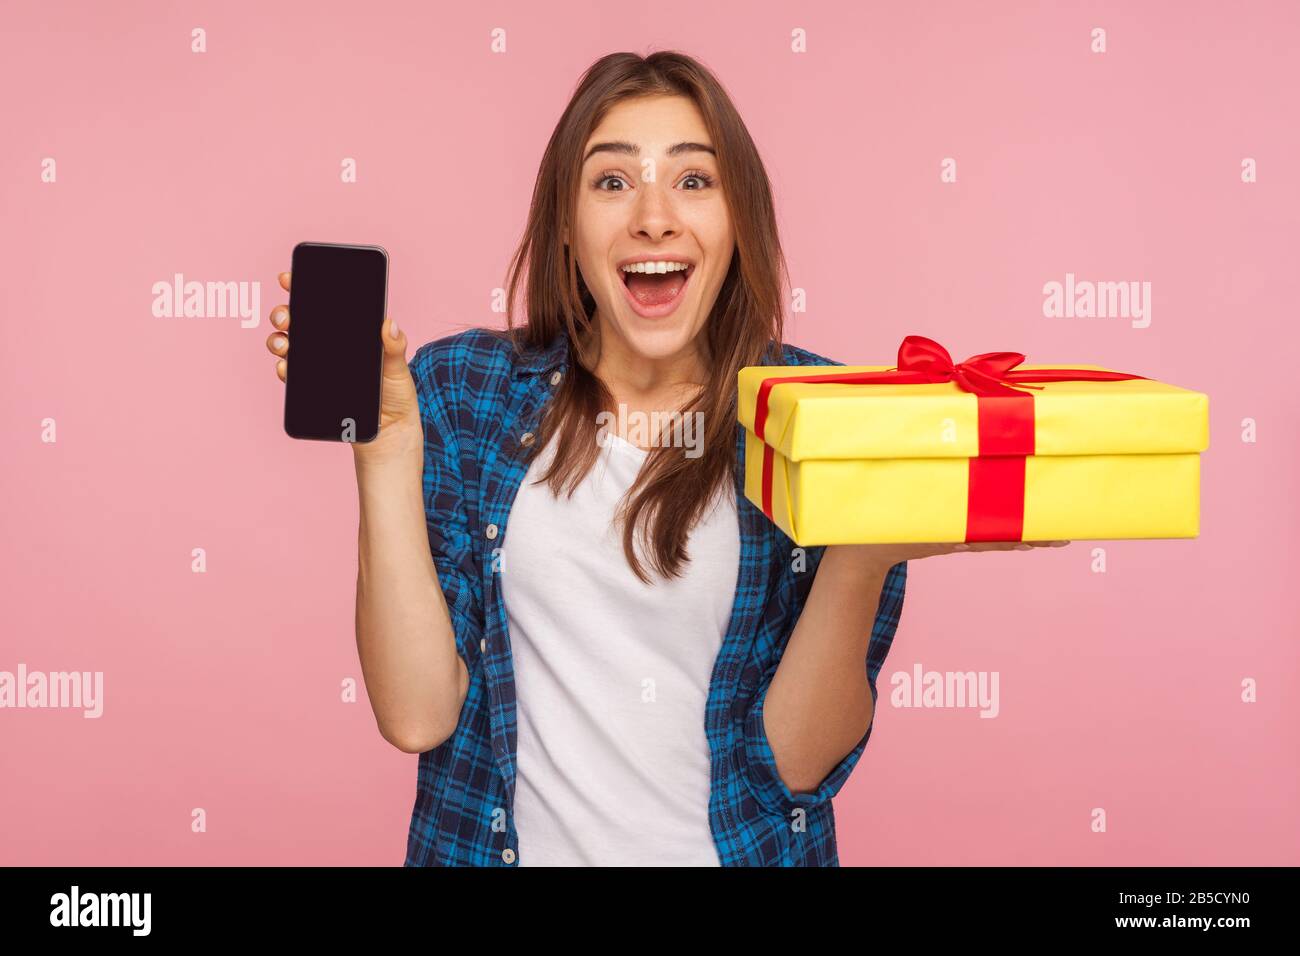 WOW, commande de livraison en ligne! Une jolie fille surprise dans une  chemise à carreaux tenant une boîte cadeau, un téléphone portable et  regardant avec étonnement, des cadeaux publicitaires et bo Photo